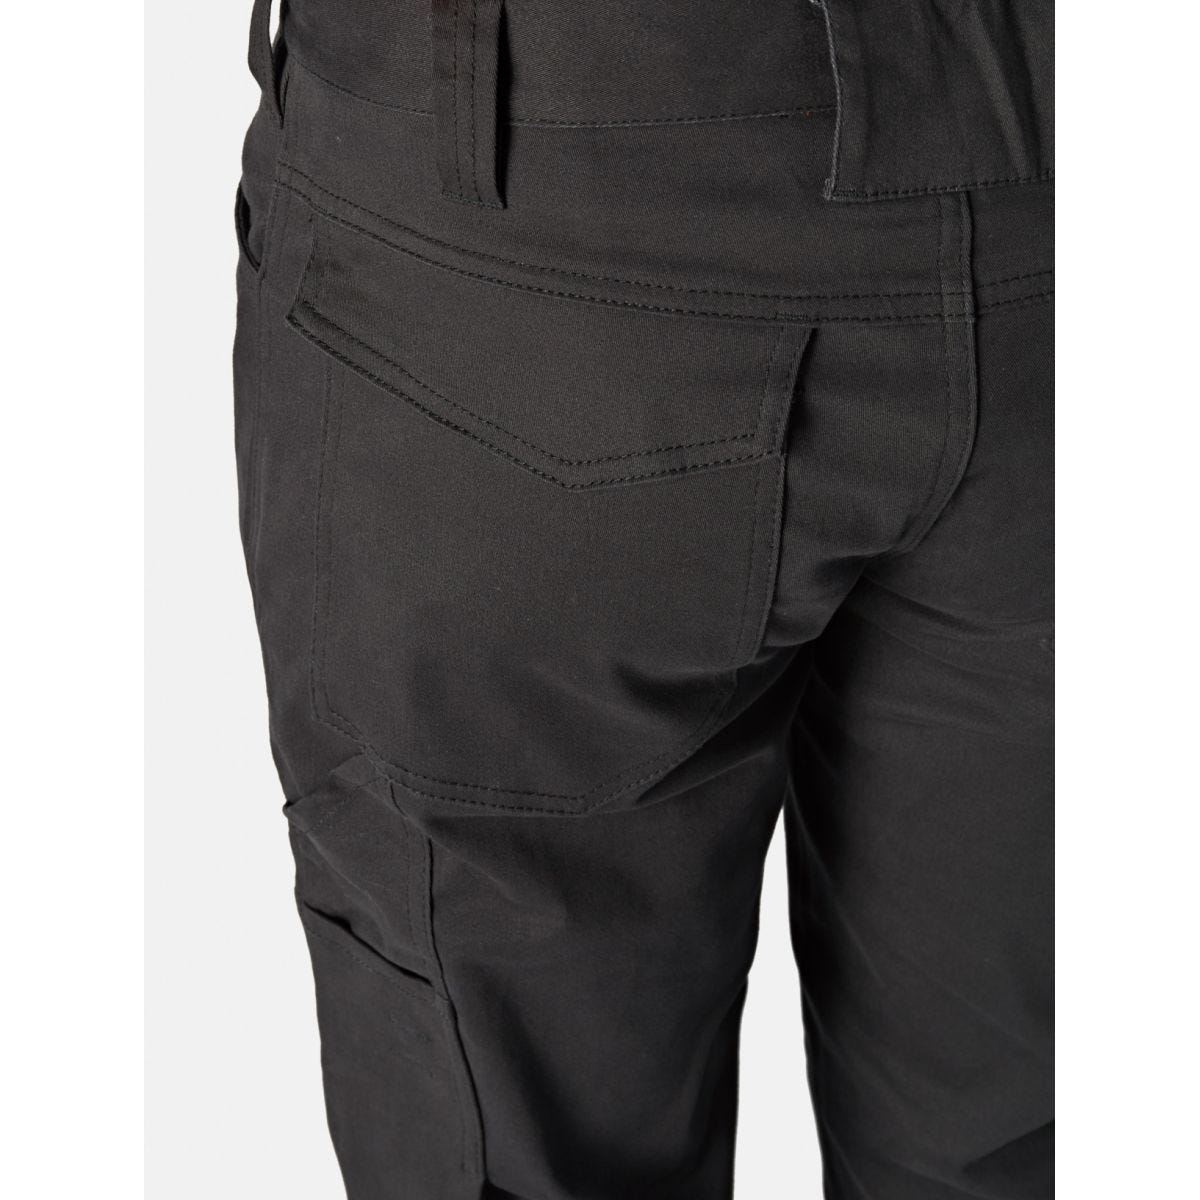 Pantalon Lead In Flex Noir - Dickies - Taille 44 2